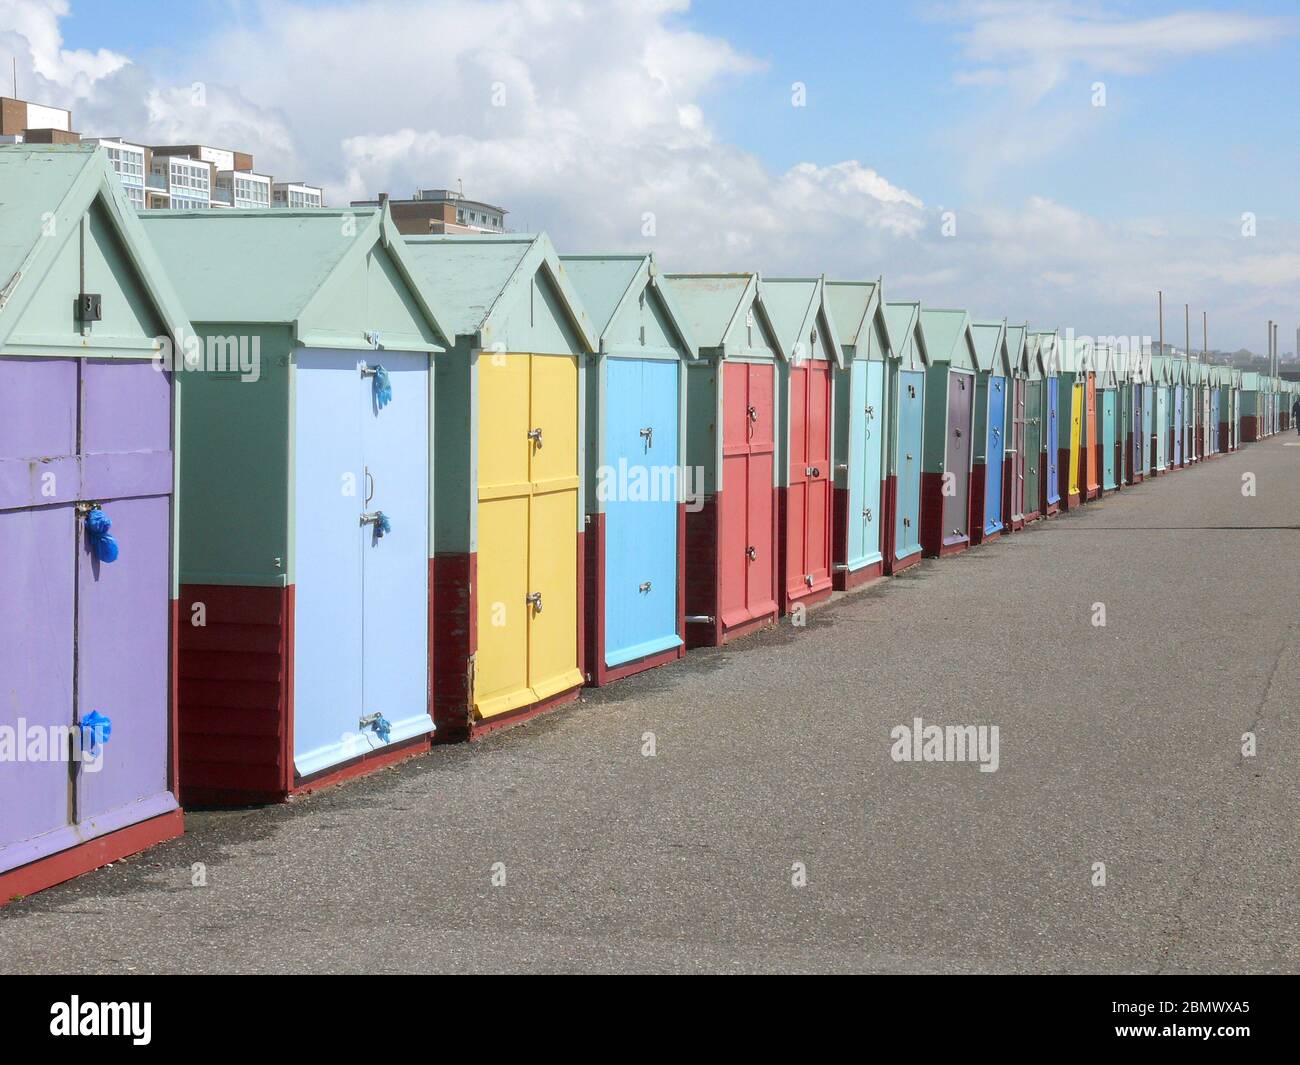 Die Stadt West Sussex Brighton am Meer ist in Sonnenschein und Farbe getaucht. Strandboote, Möwen und die lebendigen Farben der Strandhütten und der Stockfoto